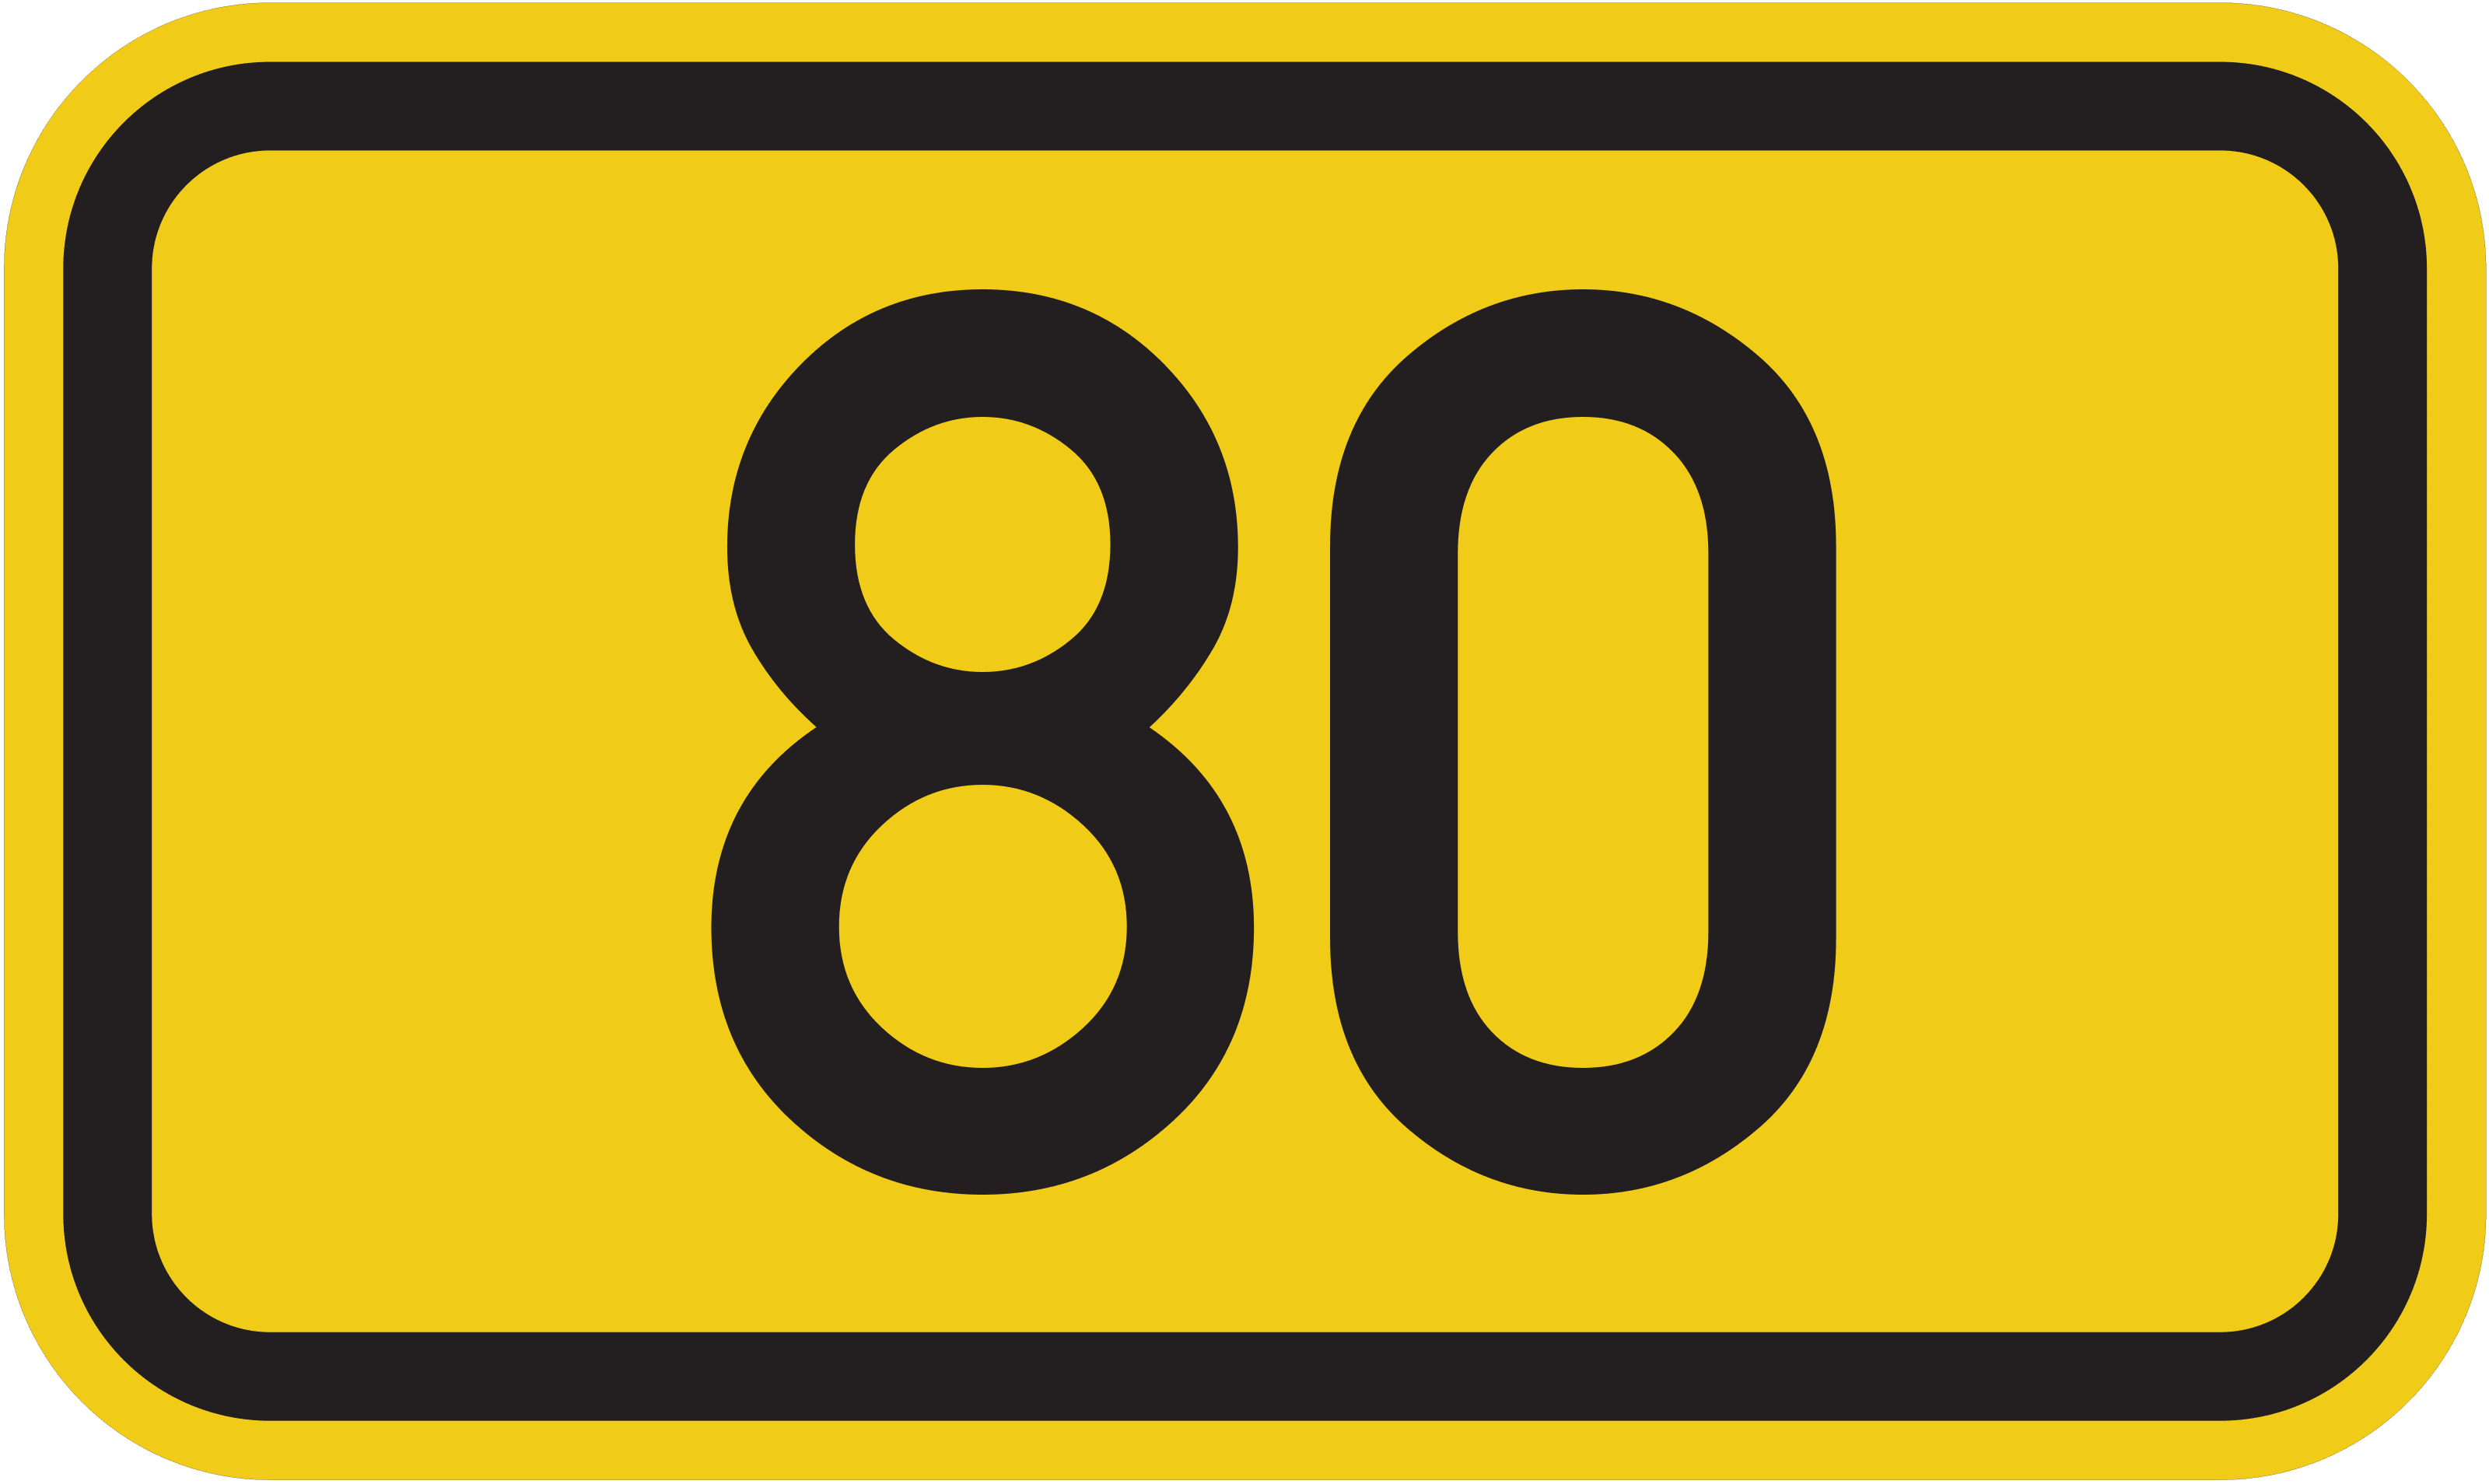 Bundesstraße B 80